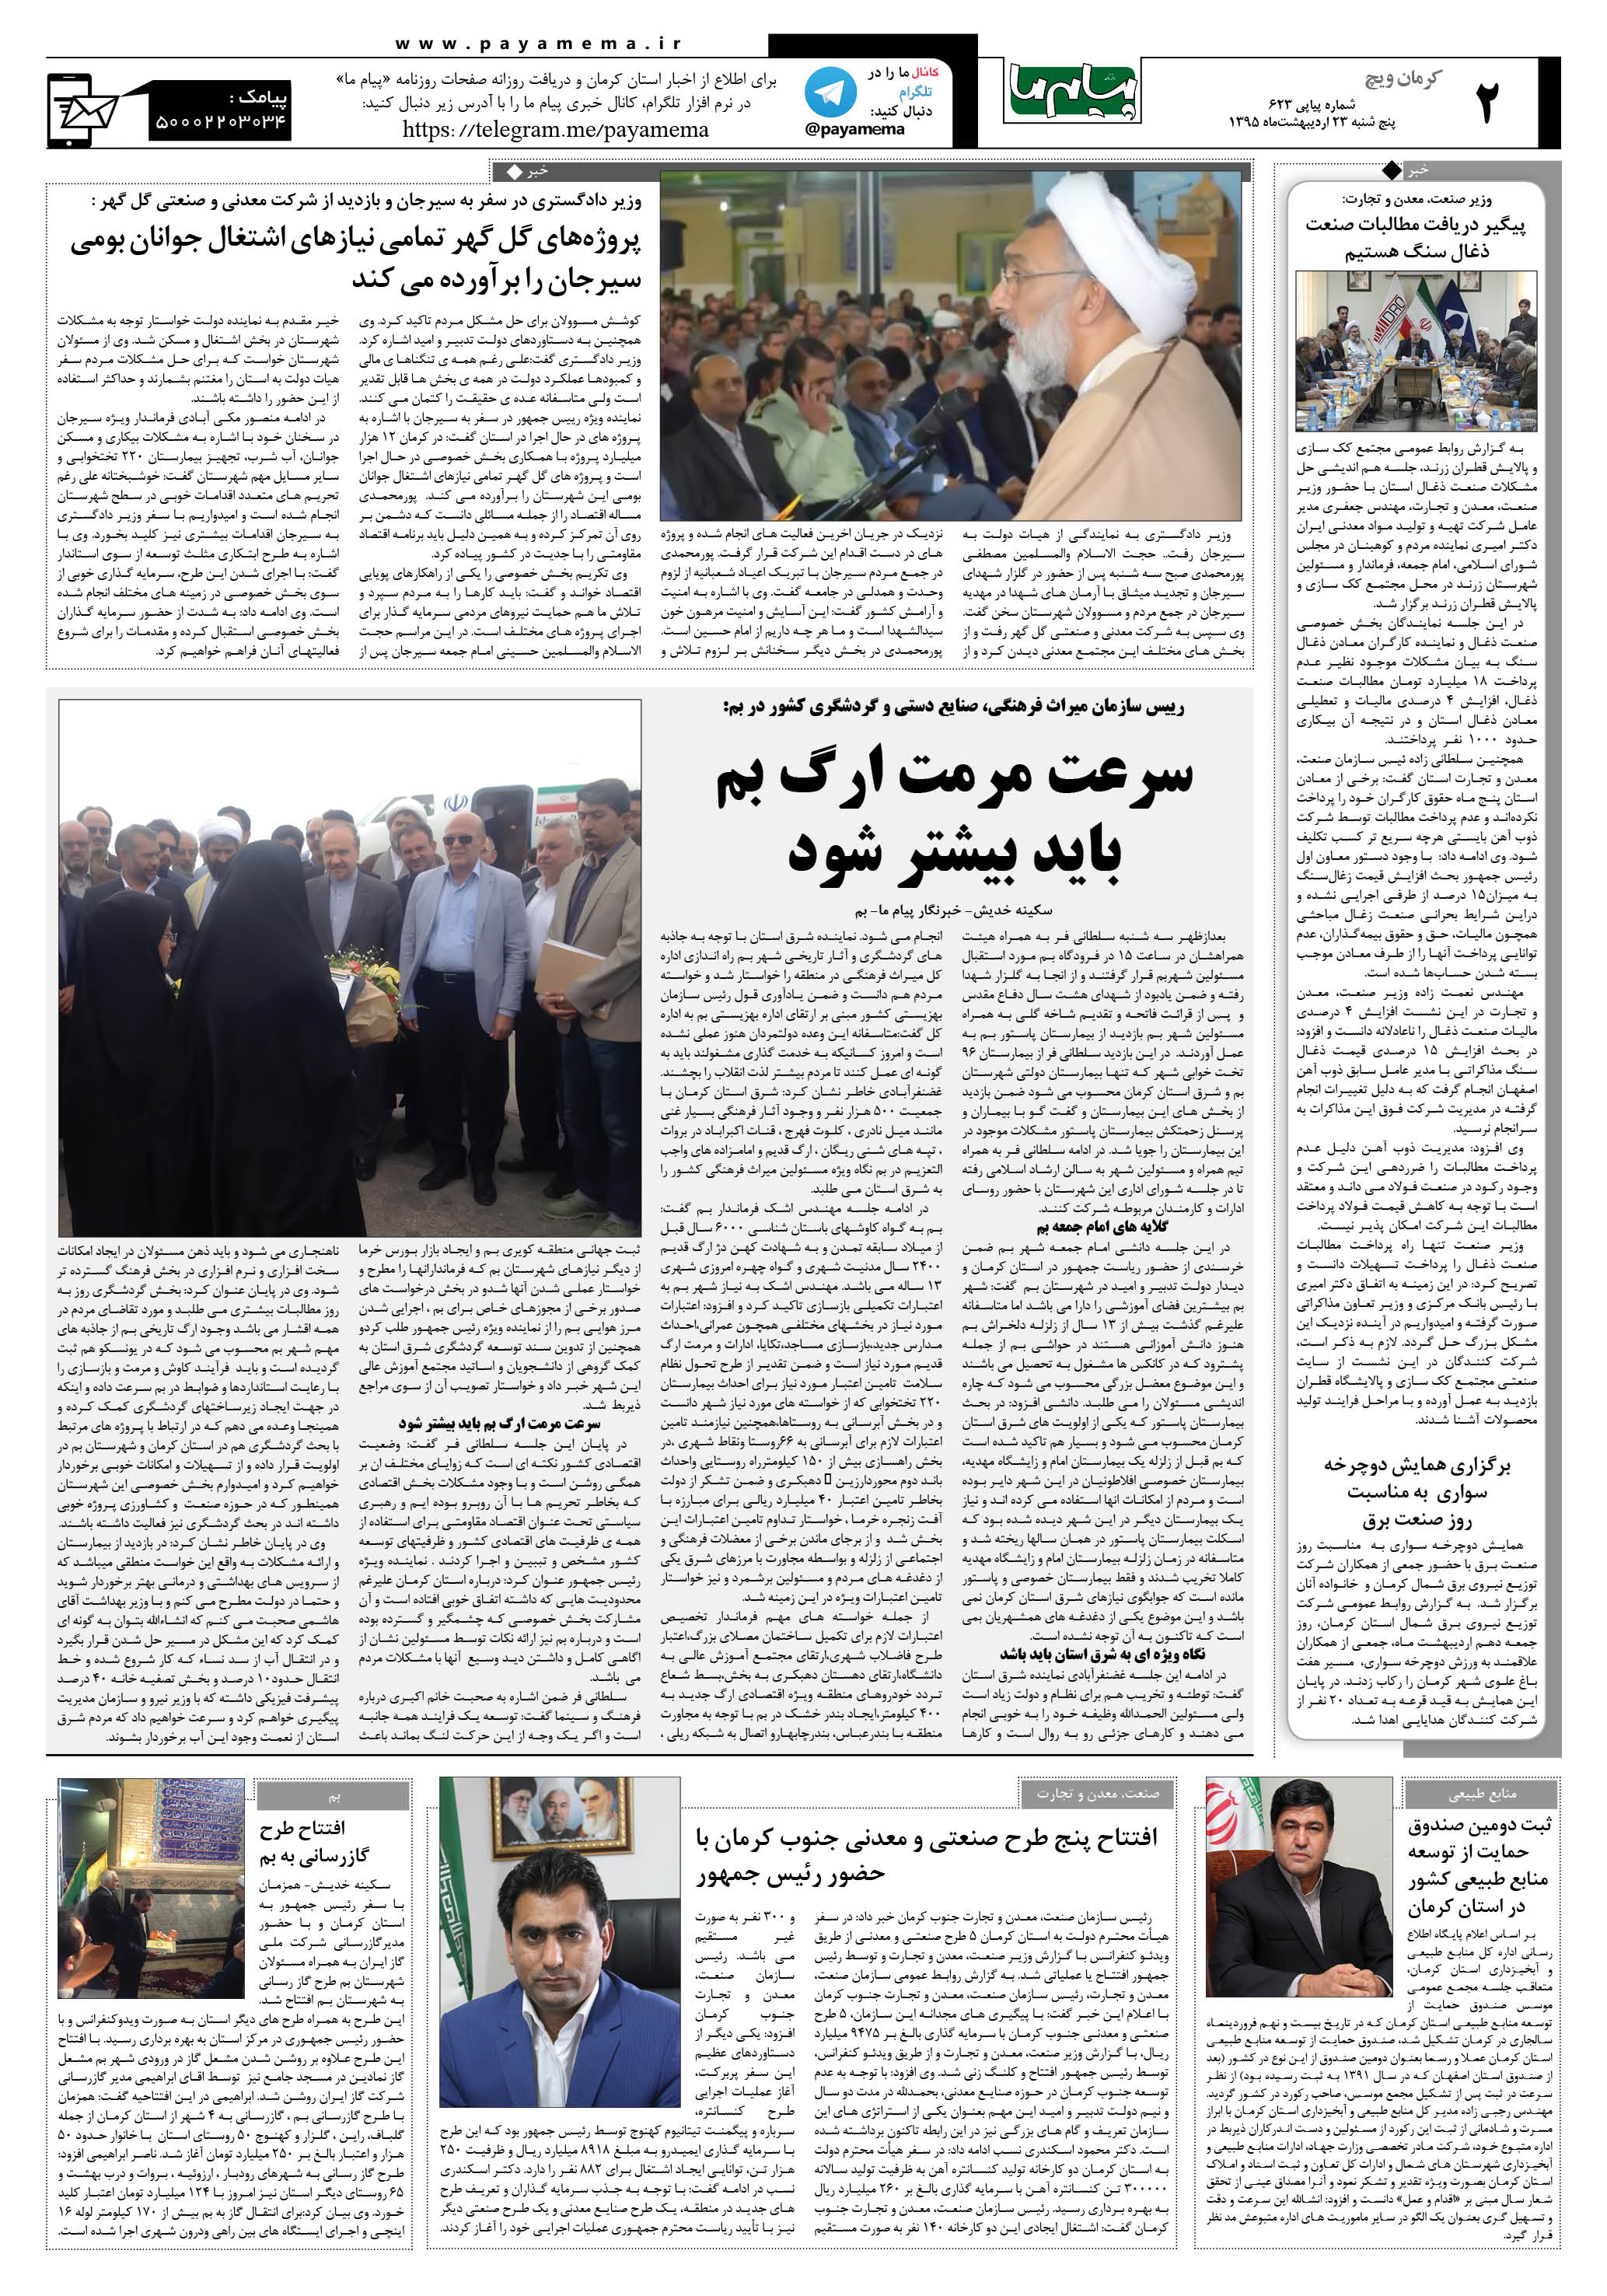 صفحه کرمان ویج شماره 623 روزنامه پیام ما